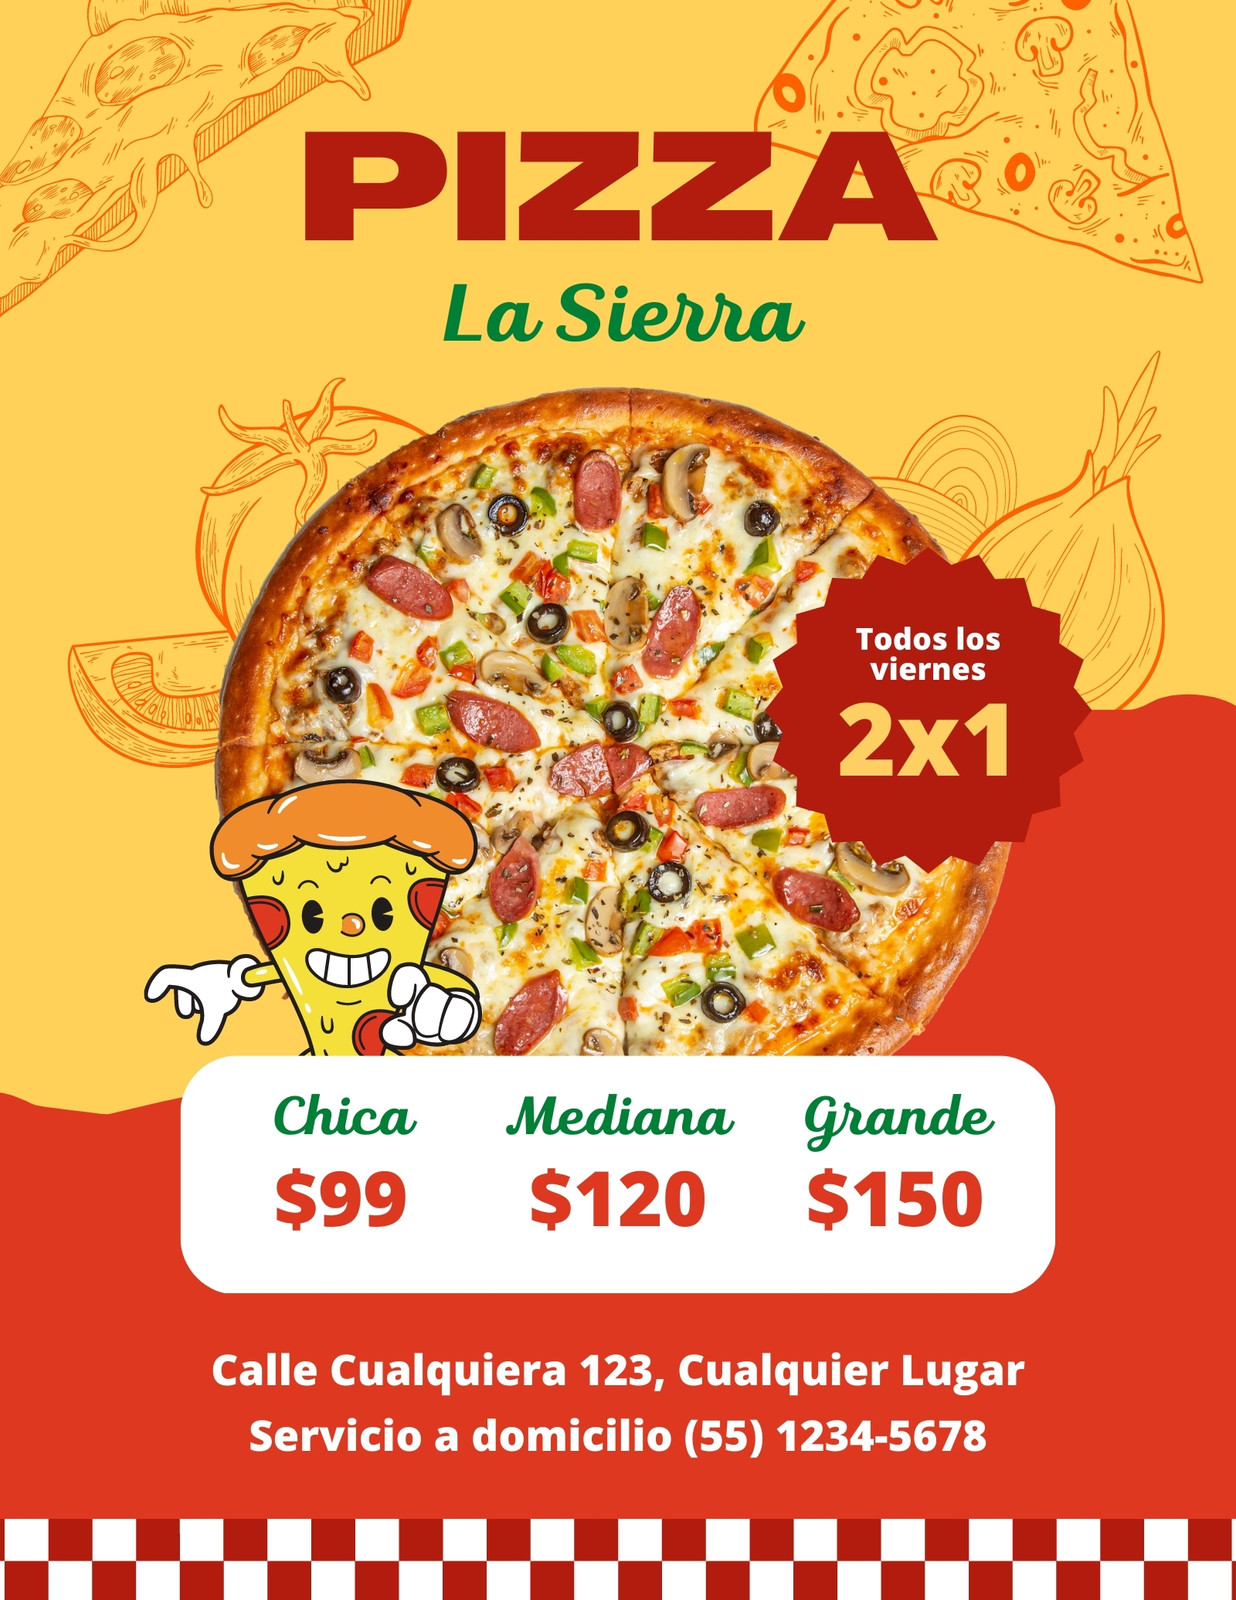 Plantillas pizza - Gratis y editables - Canva